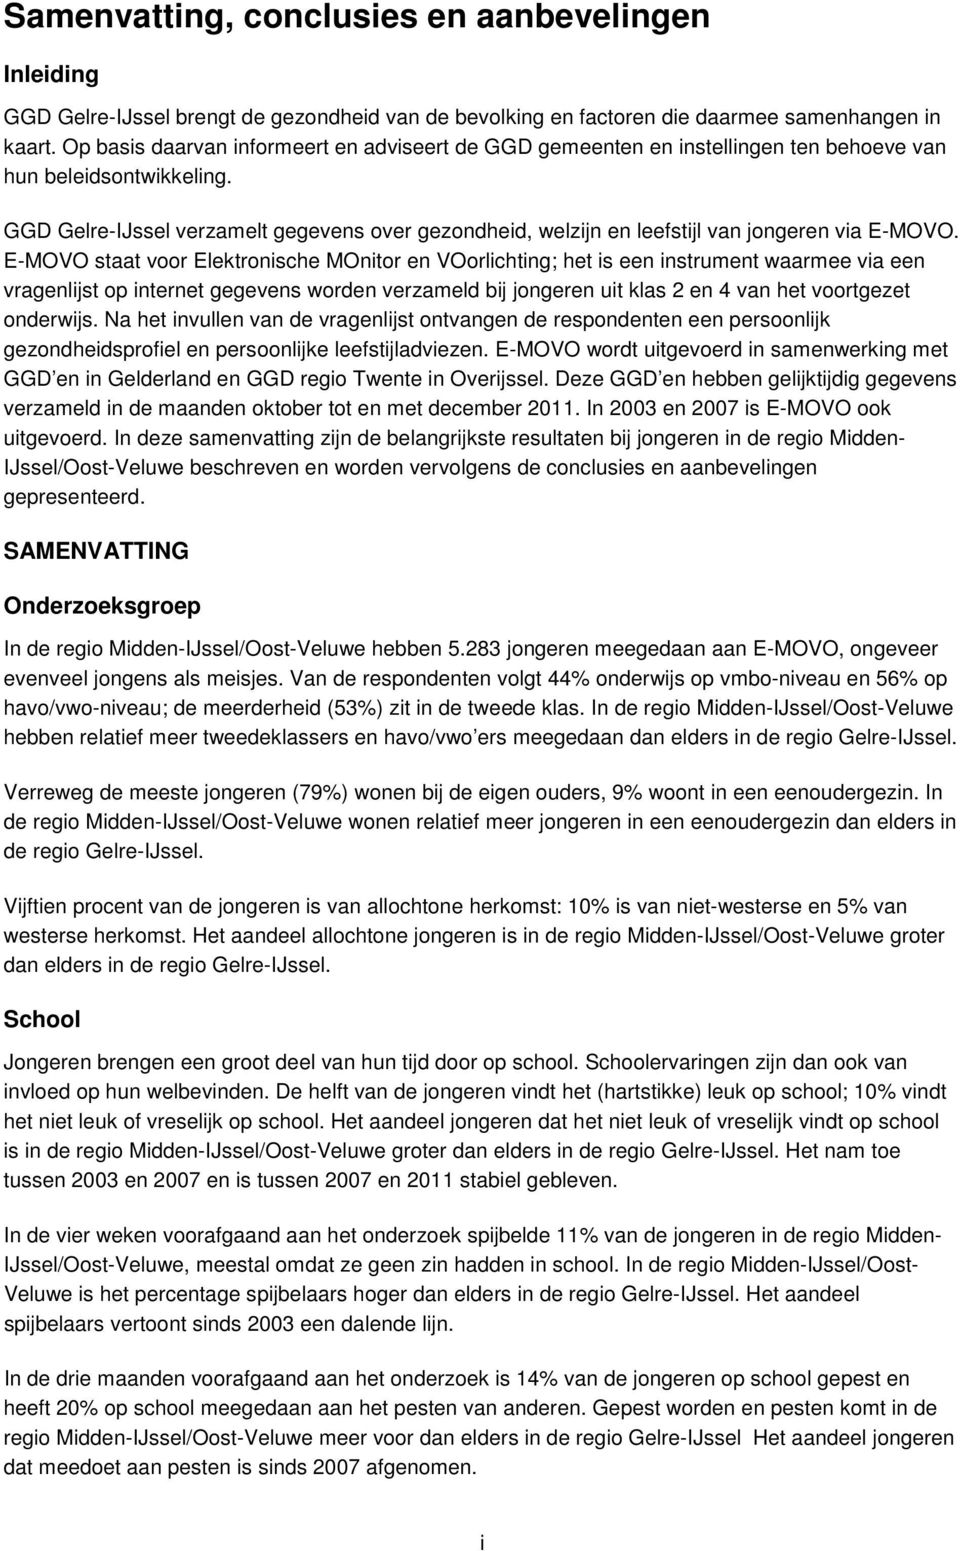 GGD Gelre-IJssel verzamelt gegevens over gezondheid, welzijn en leefstijl van jongeren via E-MOVO.